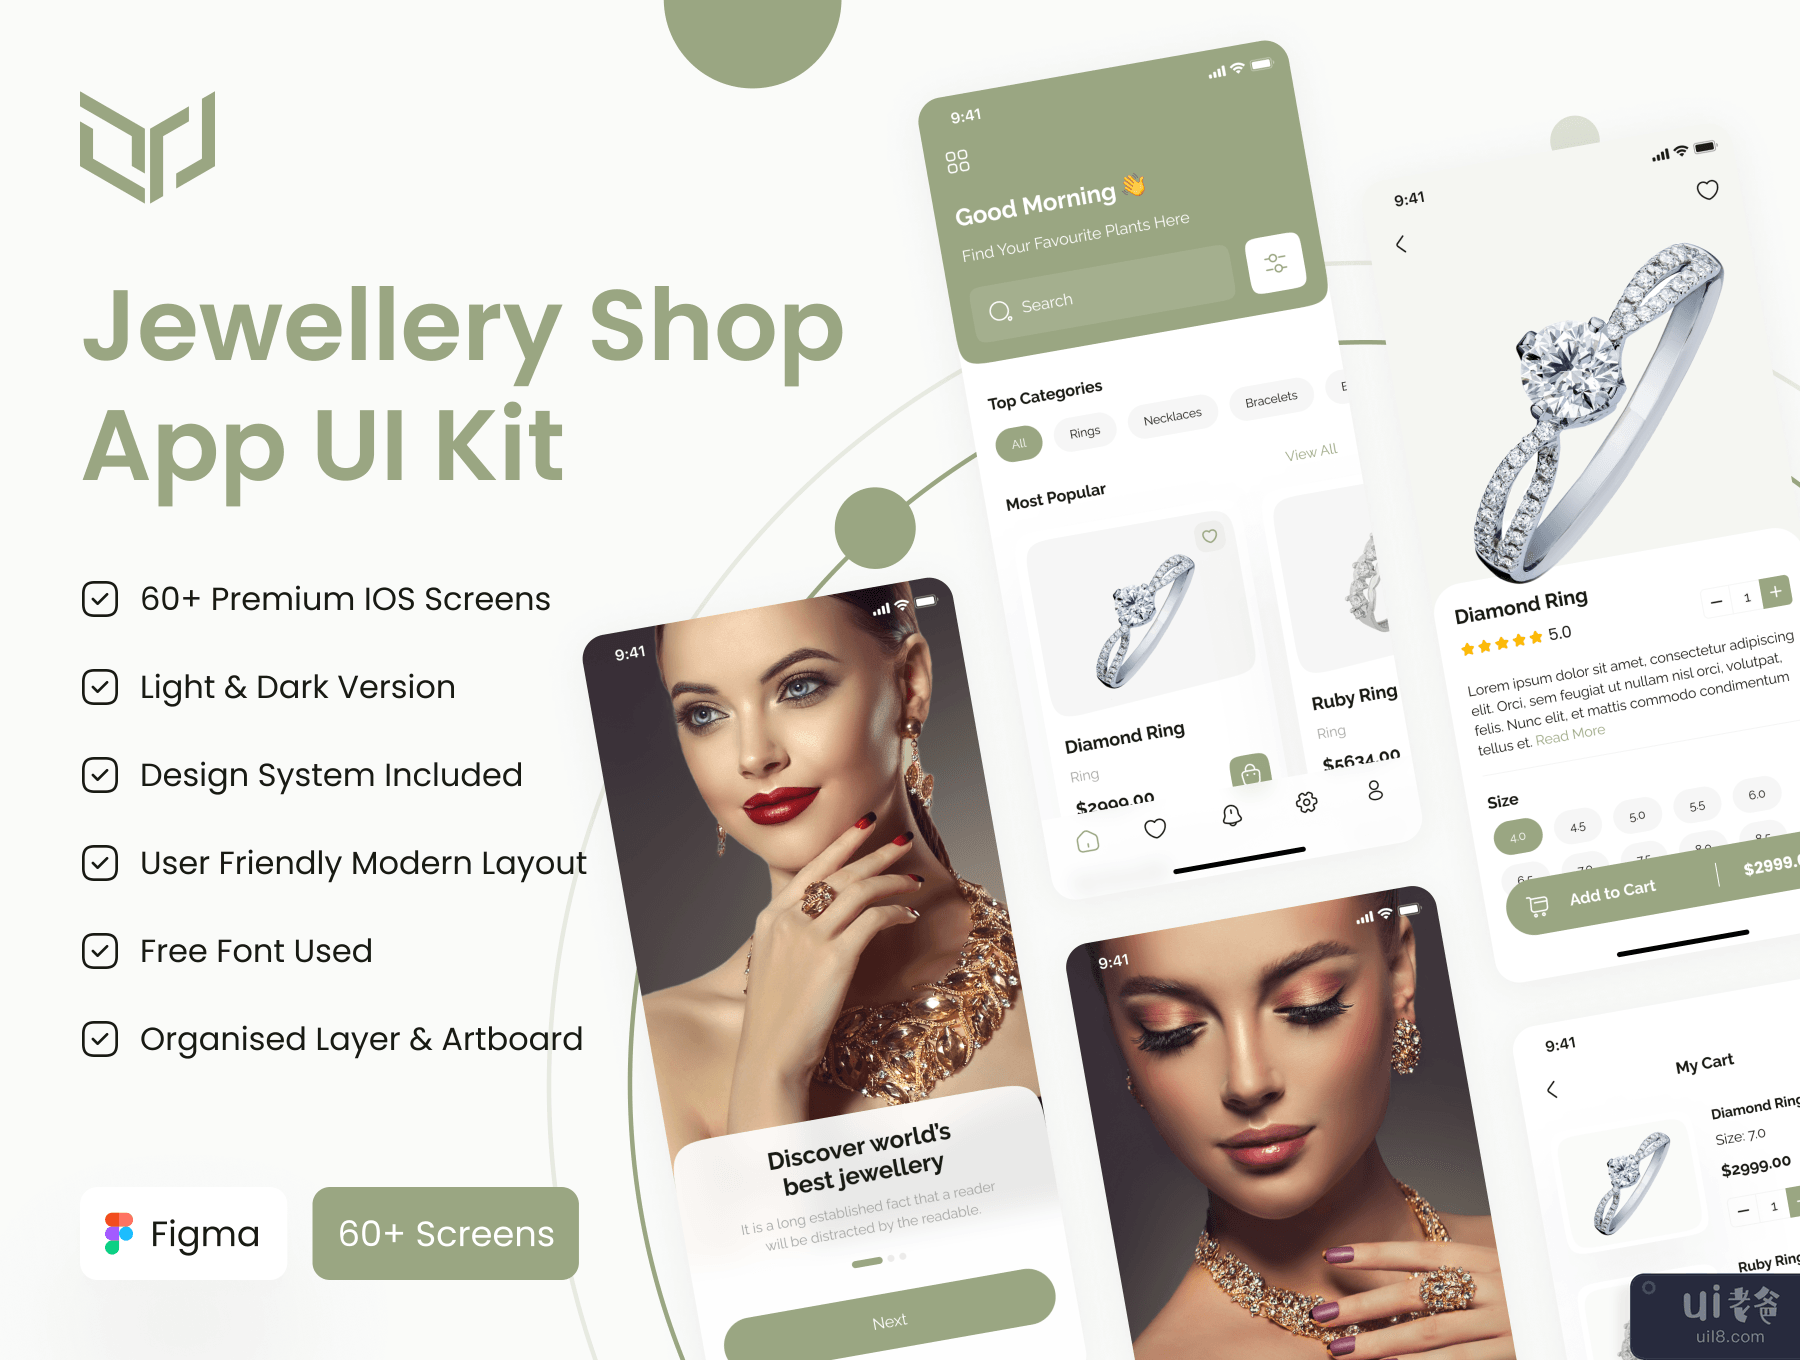 珠宝店应用程序 UI 工具包 (Jewellery Shop App UI Kit)插图7